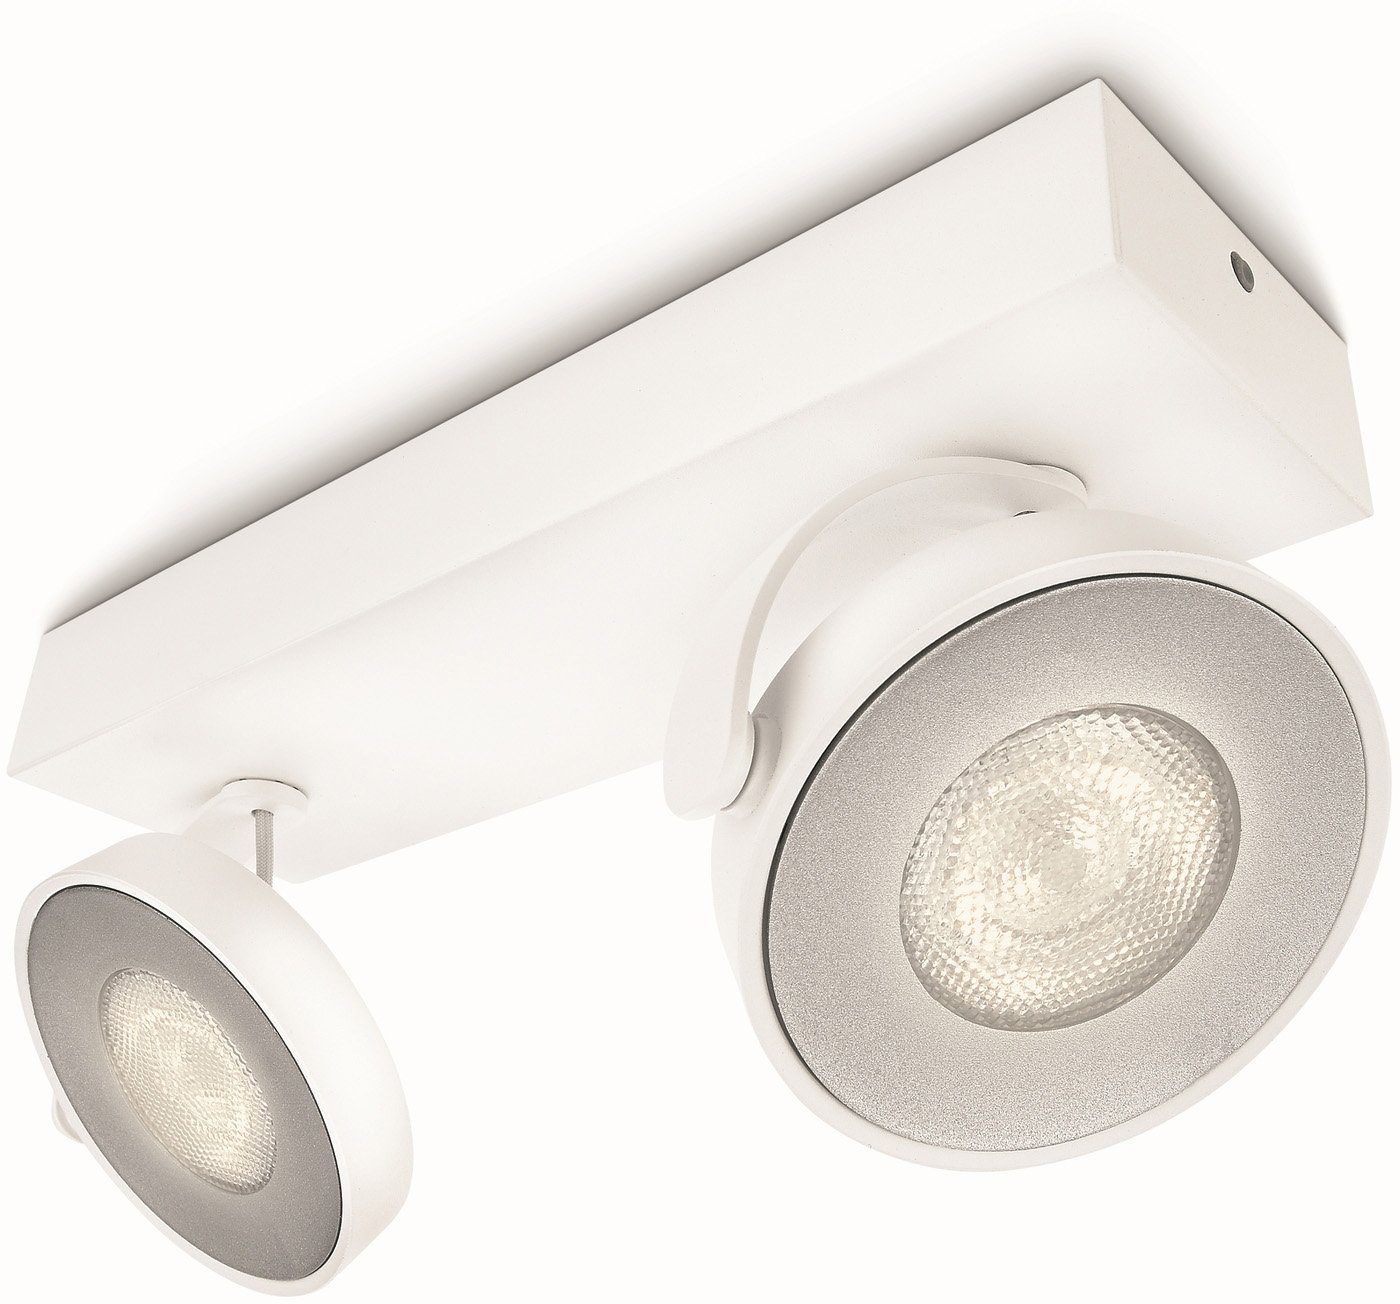 fest WarmGlowDimmen Spot integriert, Wohnzimmerstrahler Philips 1000lm 2flg LED LED Warmweiß, Clockwork, Weiß, Deckenspot